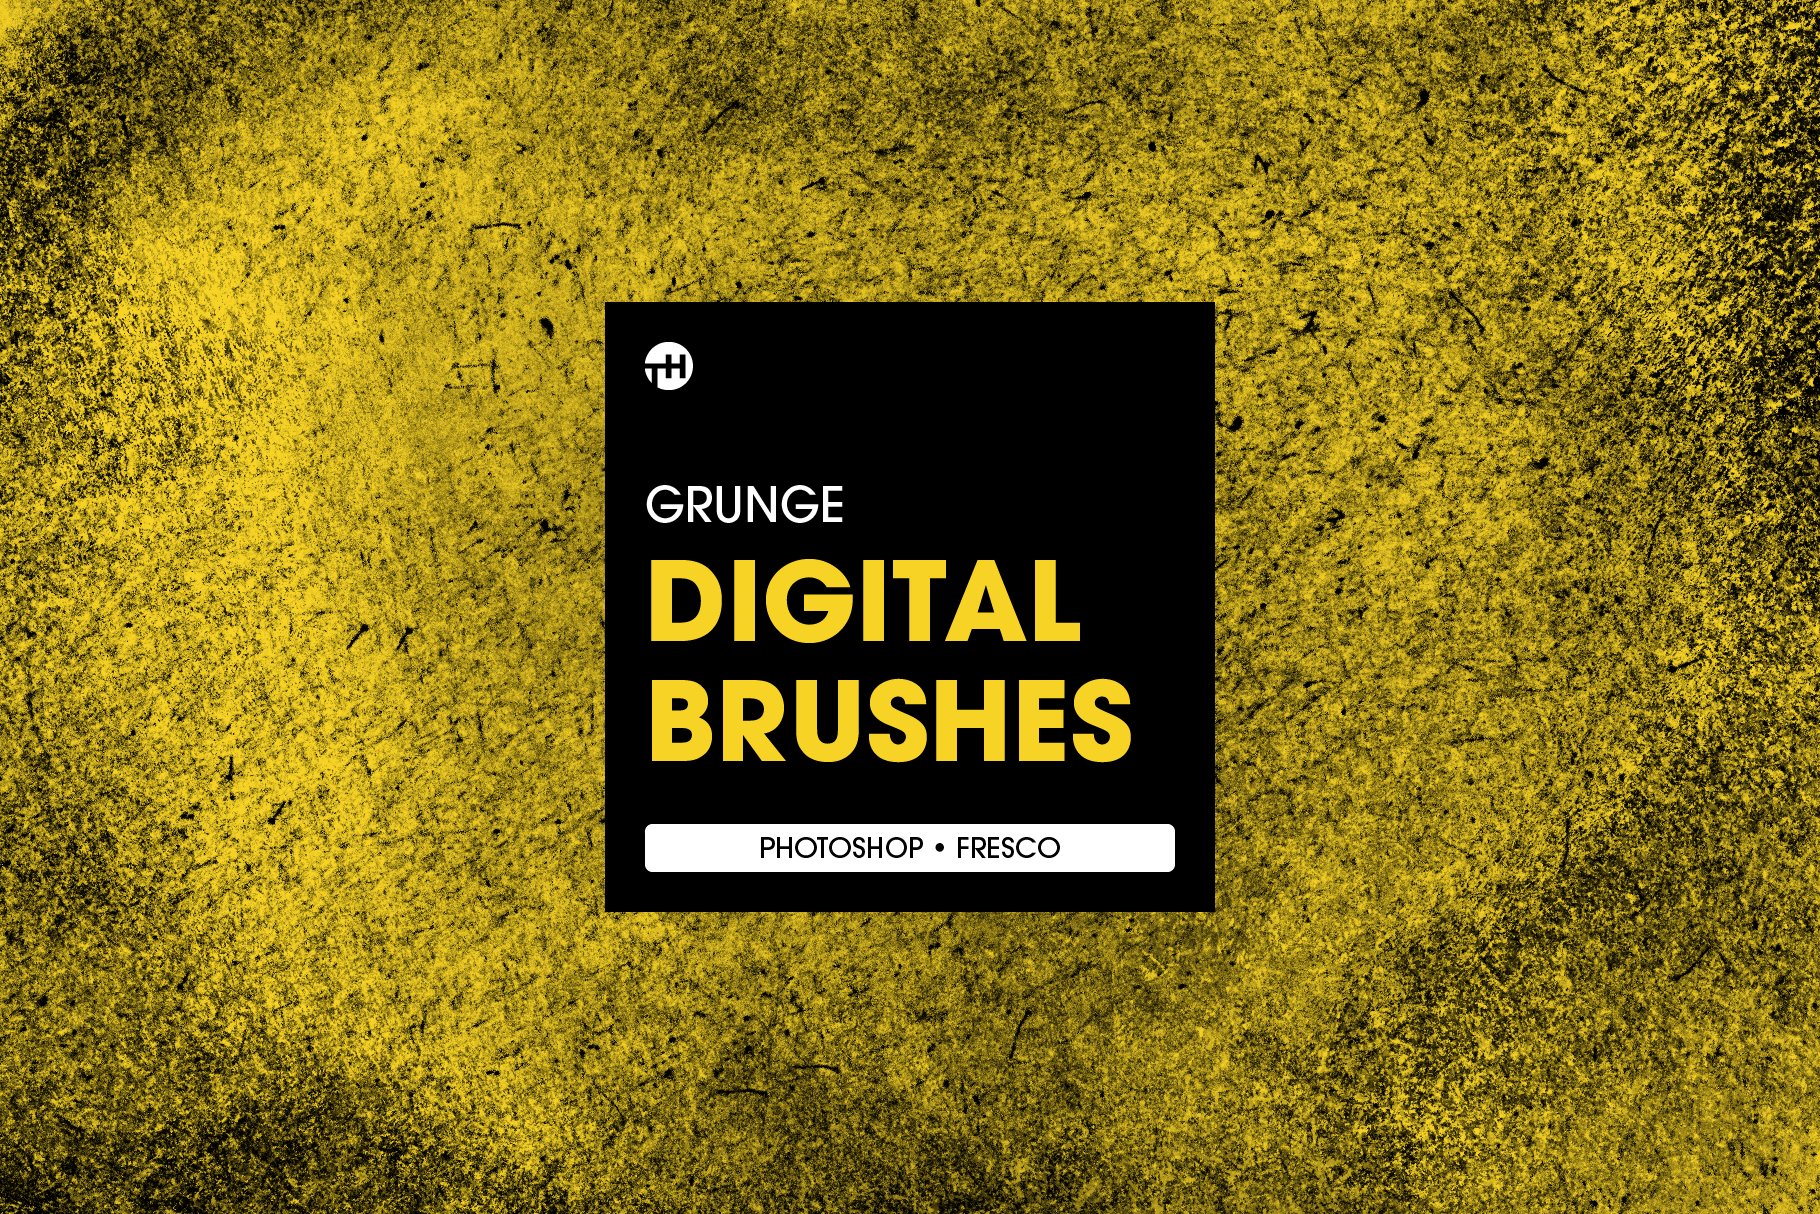 Grunge Photoshop Brushescover image.